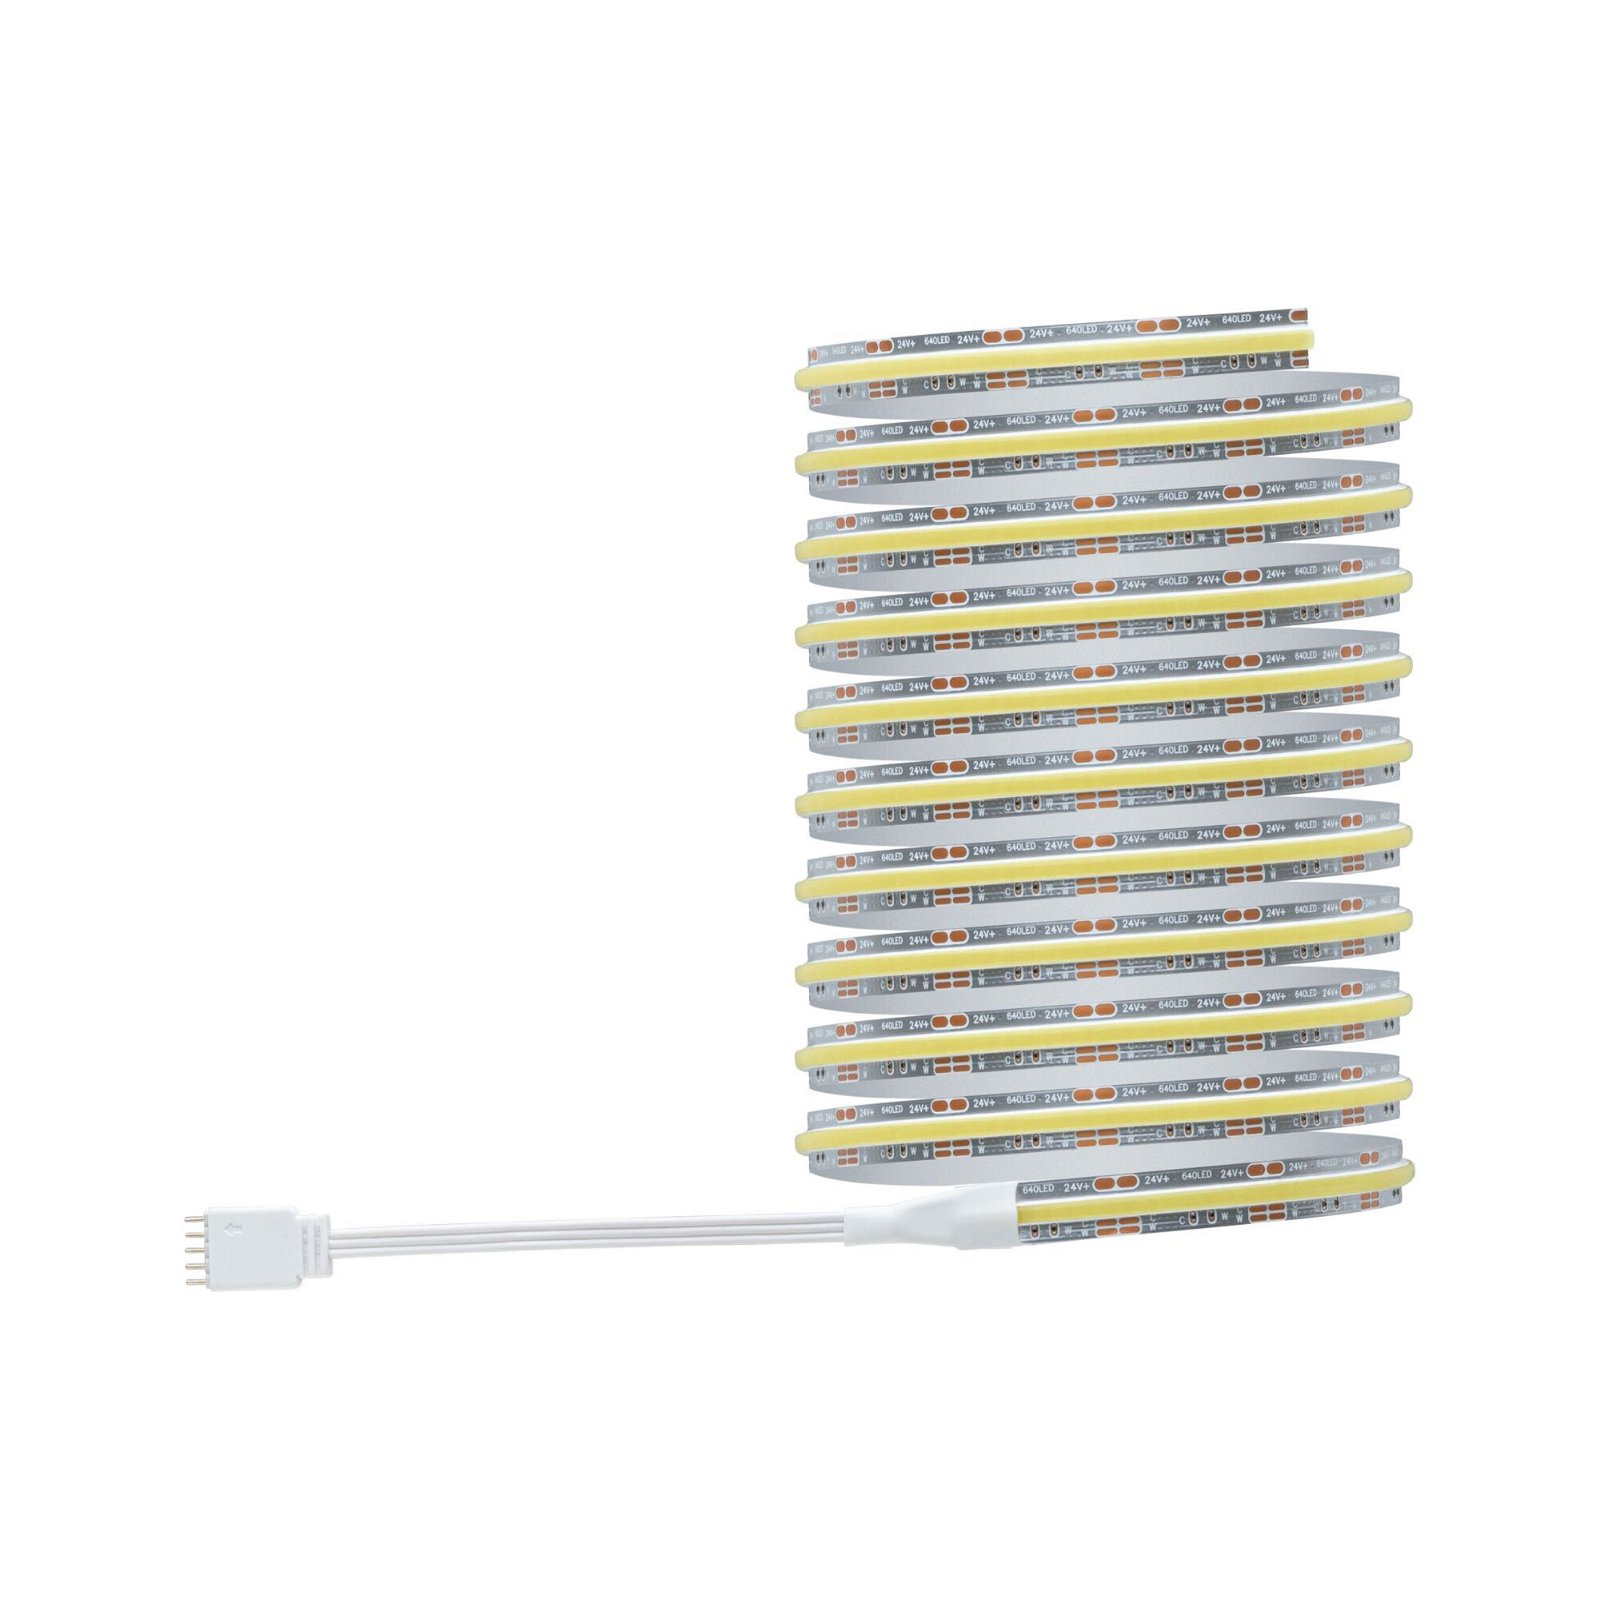 PAULMANN LICHT MaxLED 500 (71111) Strips LED White Tunable